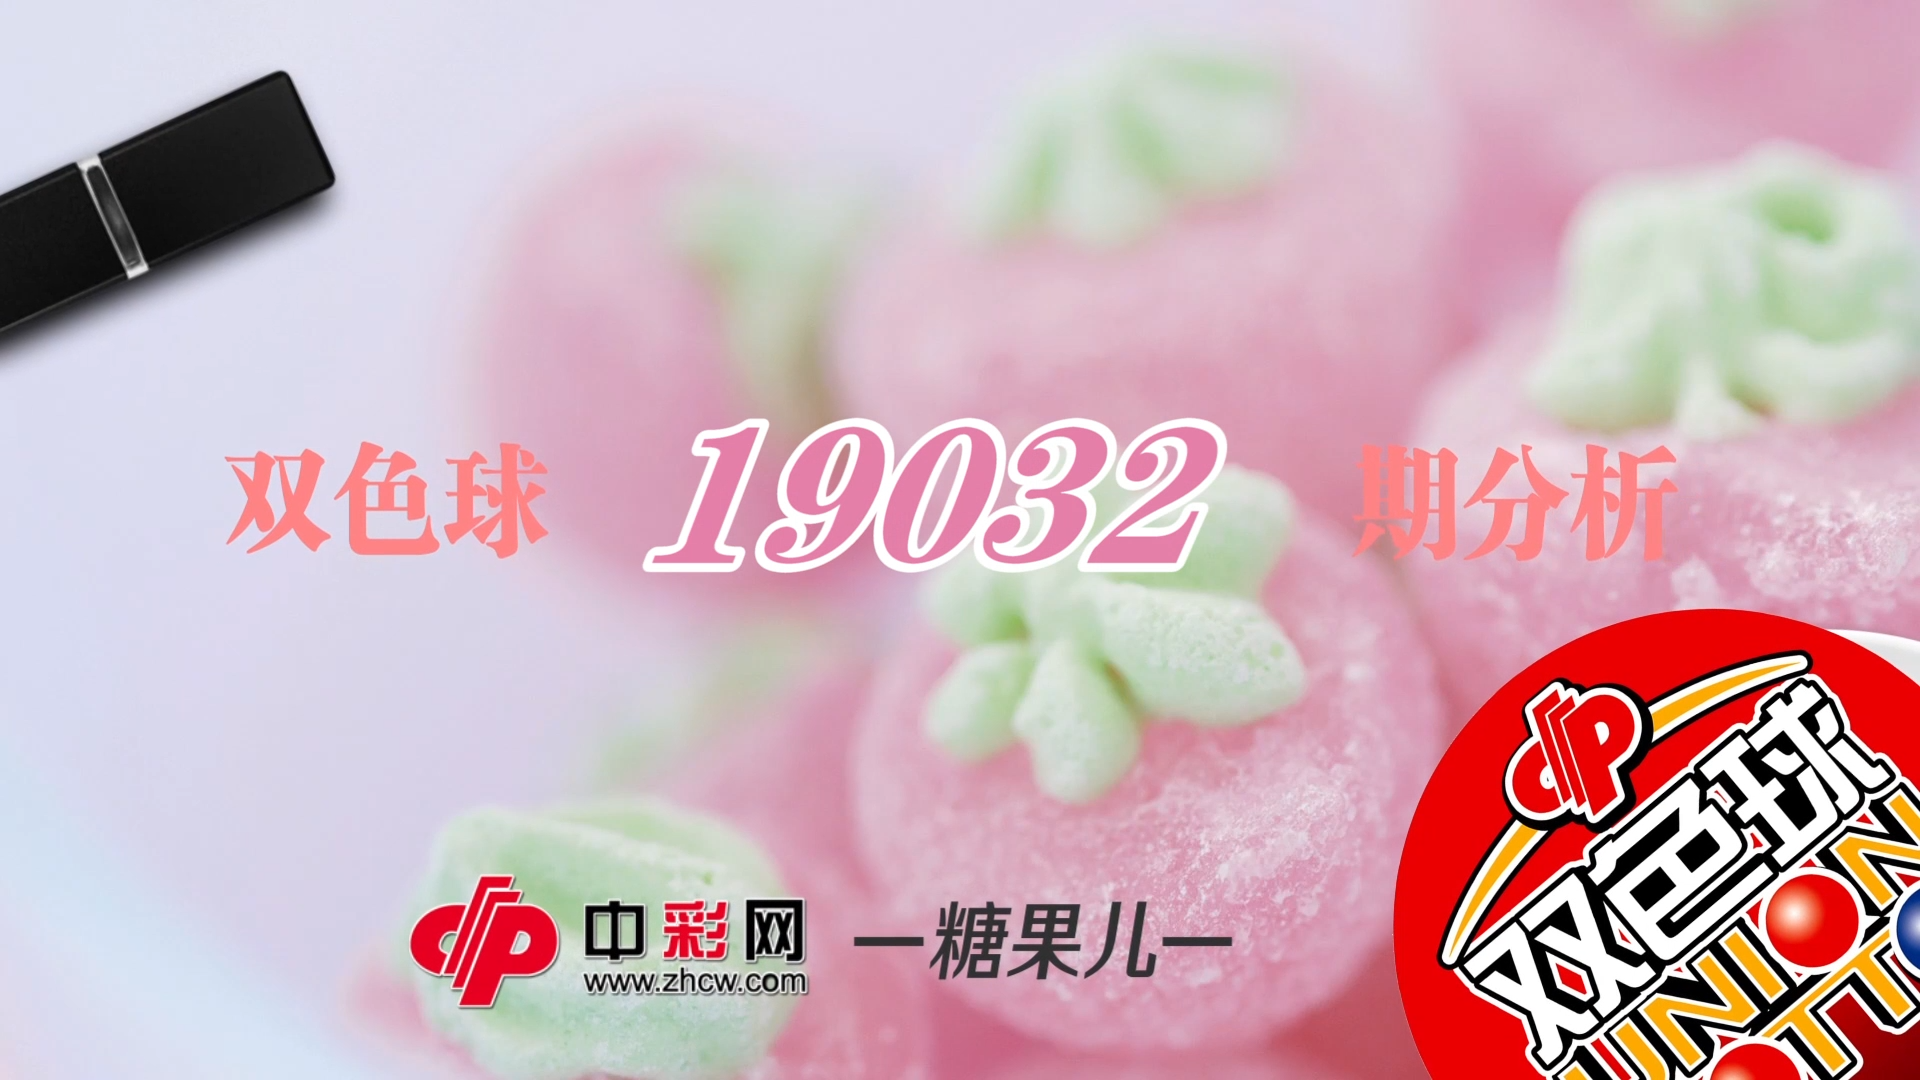 【中彩视频】糖果儿双色球第19032期